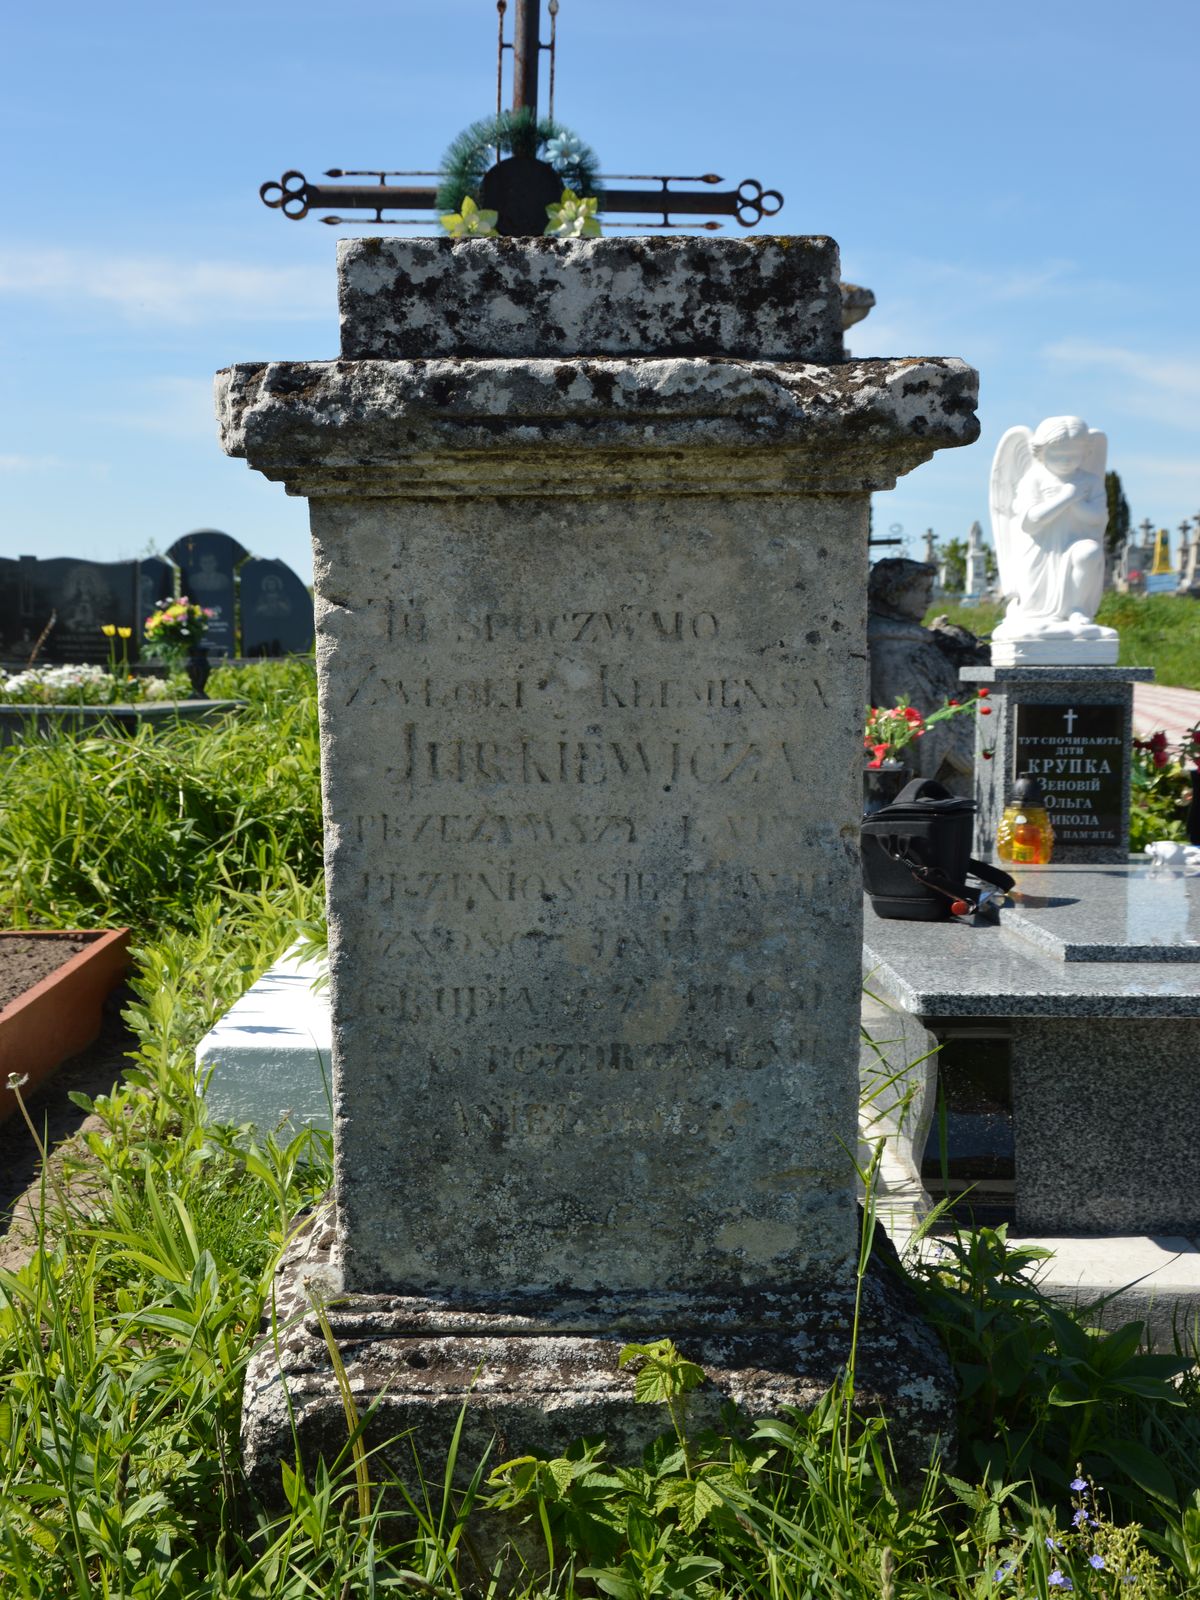 Tombstone of Klemens Jurkiewicz, cemetery in Ihrowica